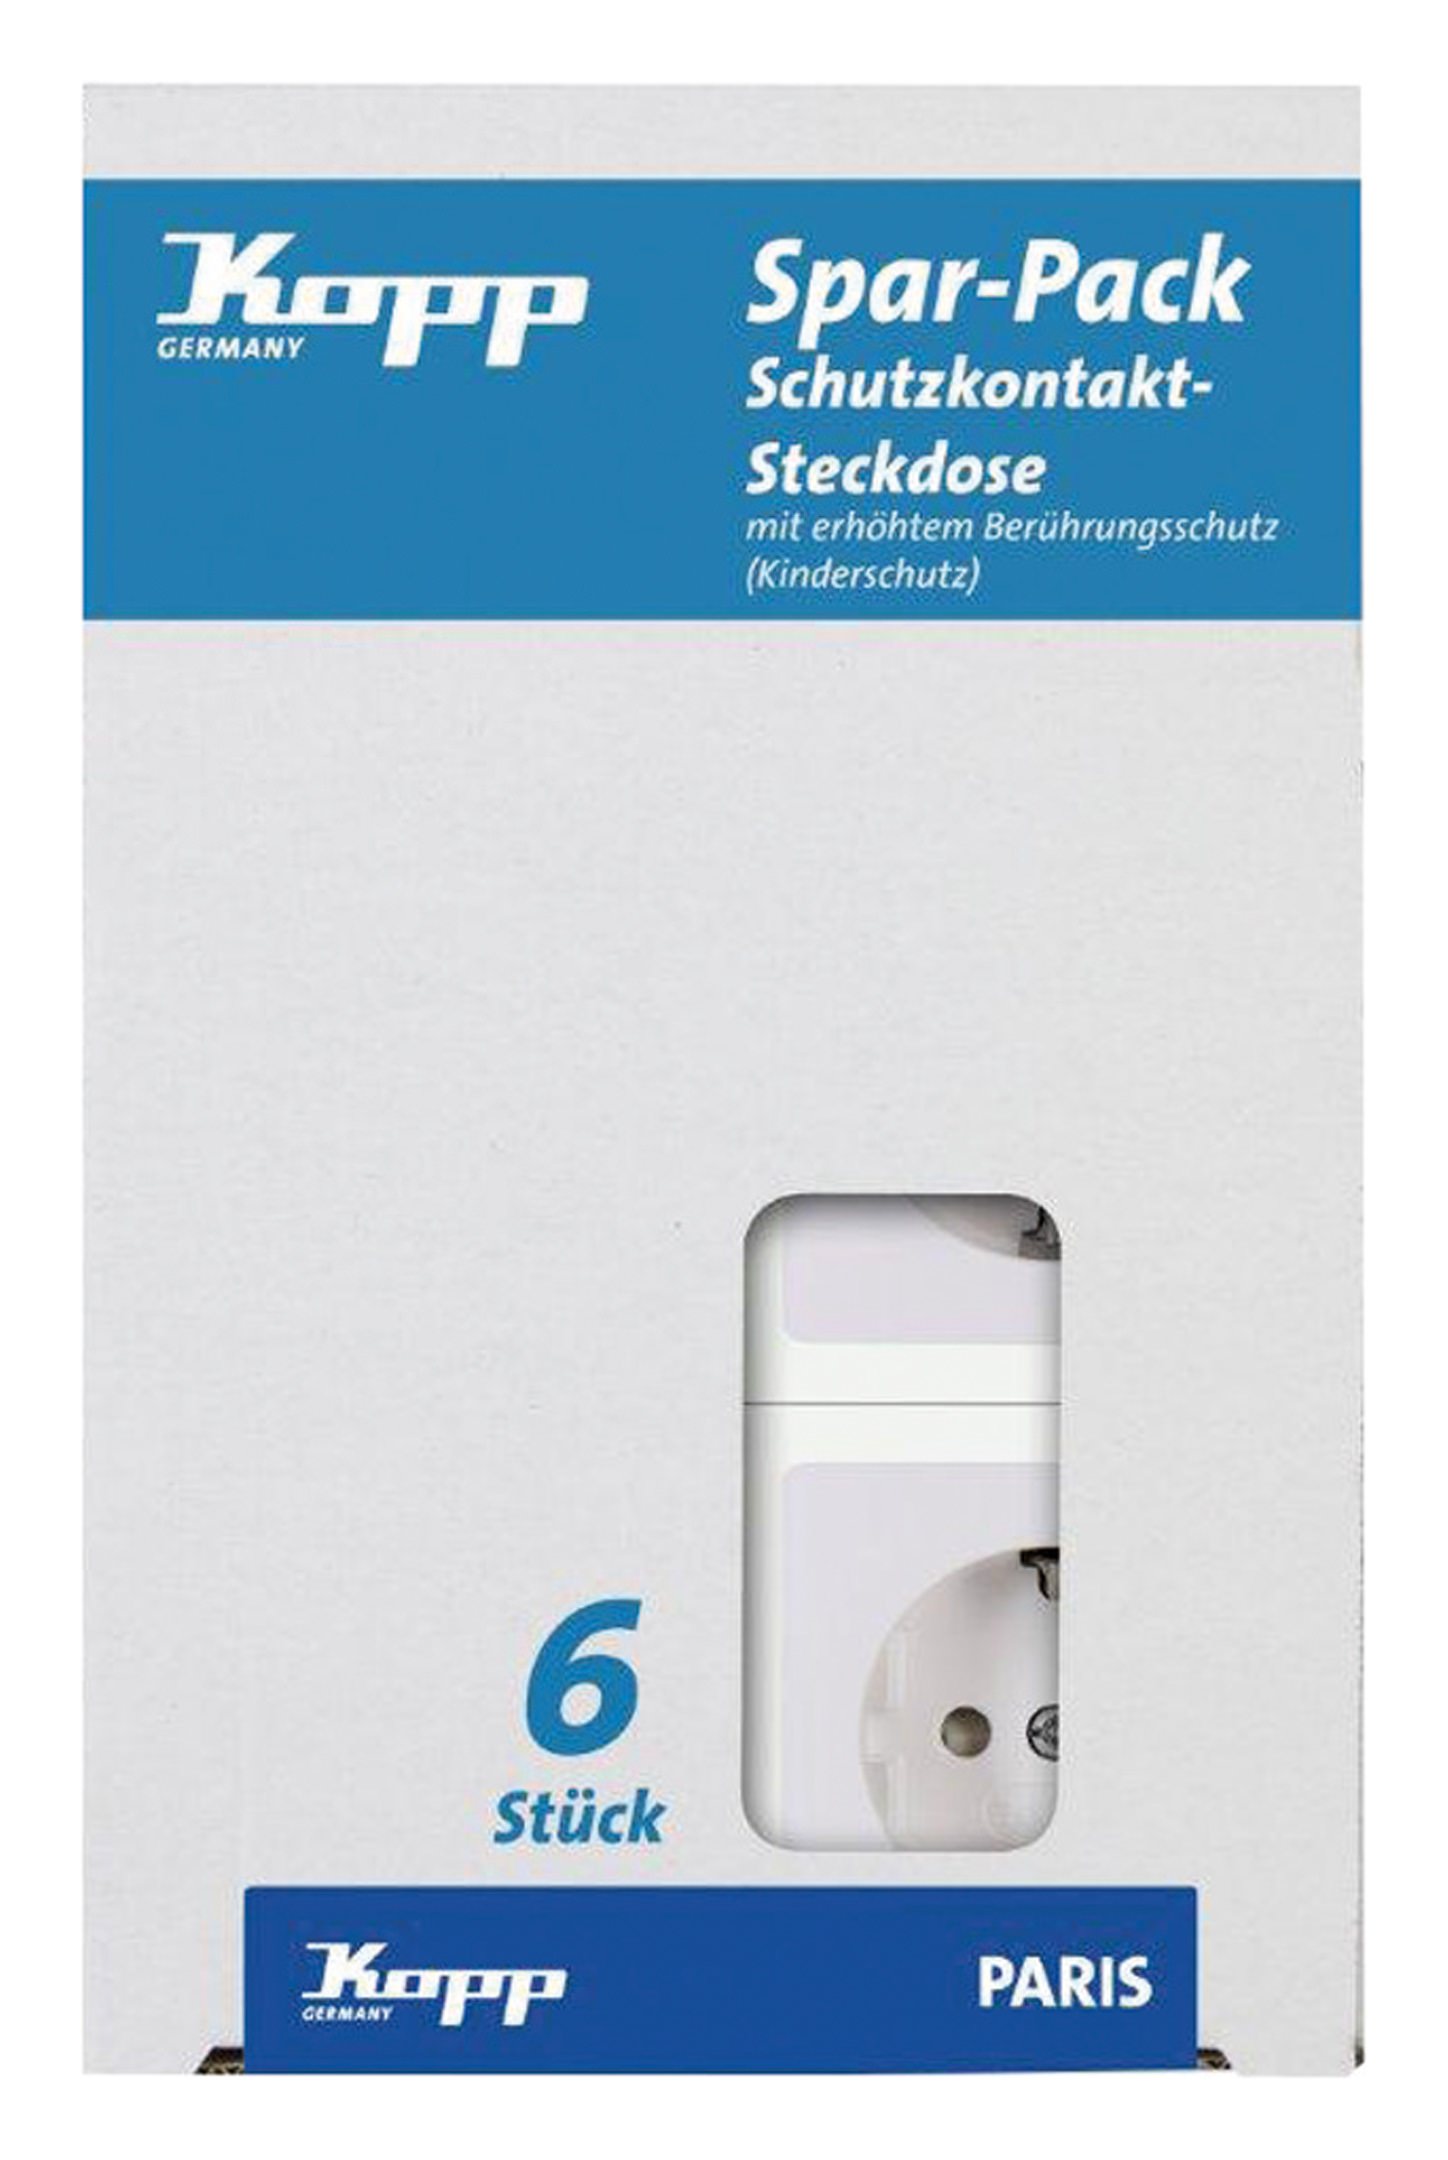 Kopp 3-fach Schutzkontakt-Steckdose, Standard, Aufputz, arktis